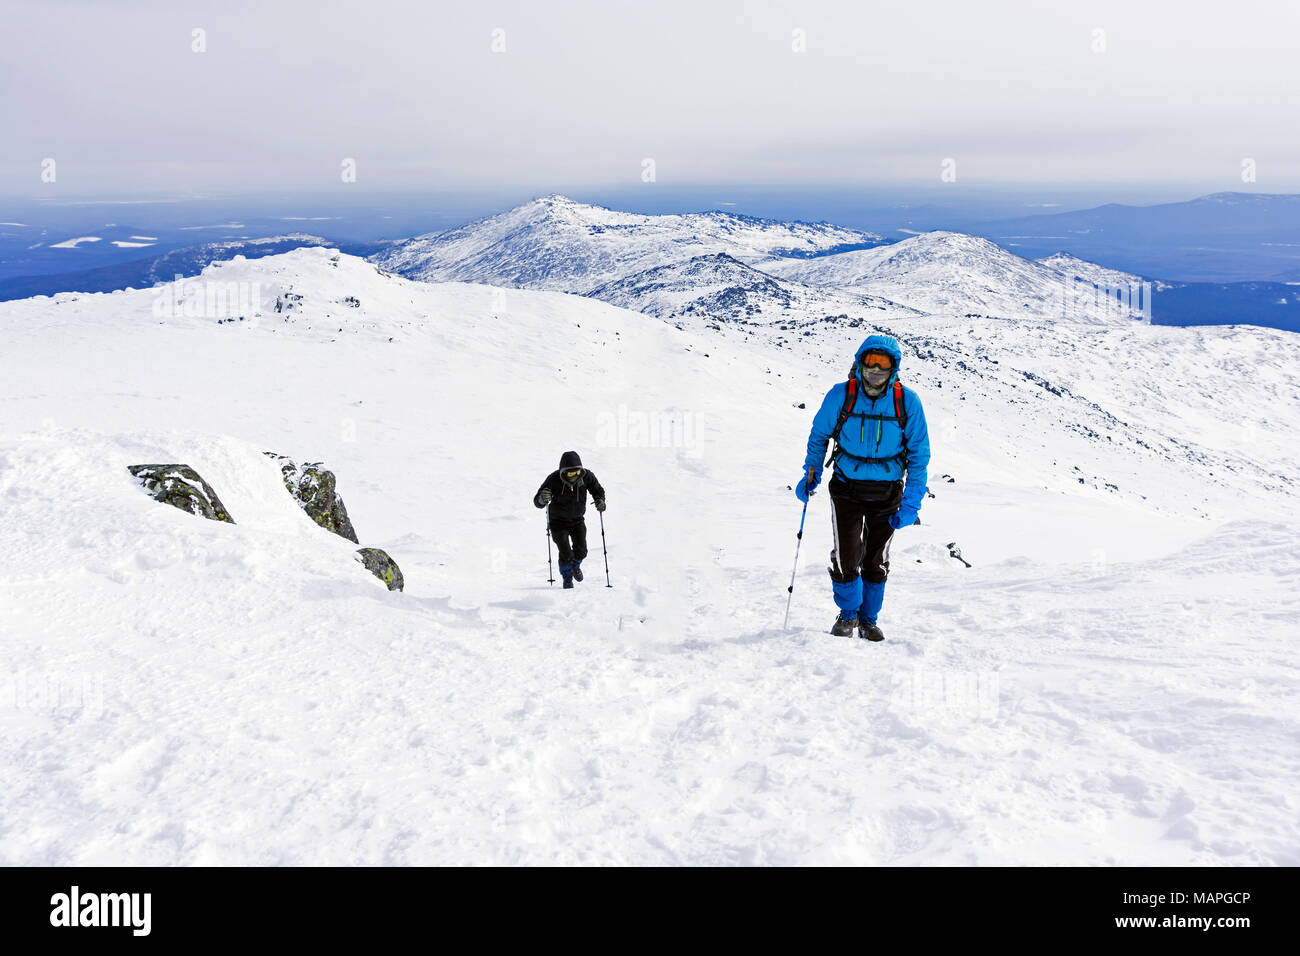 Deux alpinistes remonte la pente de montagne couverte de neige Banque D'Images